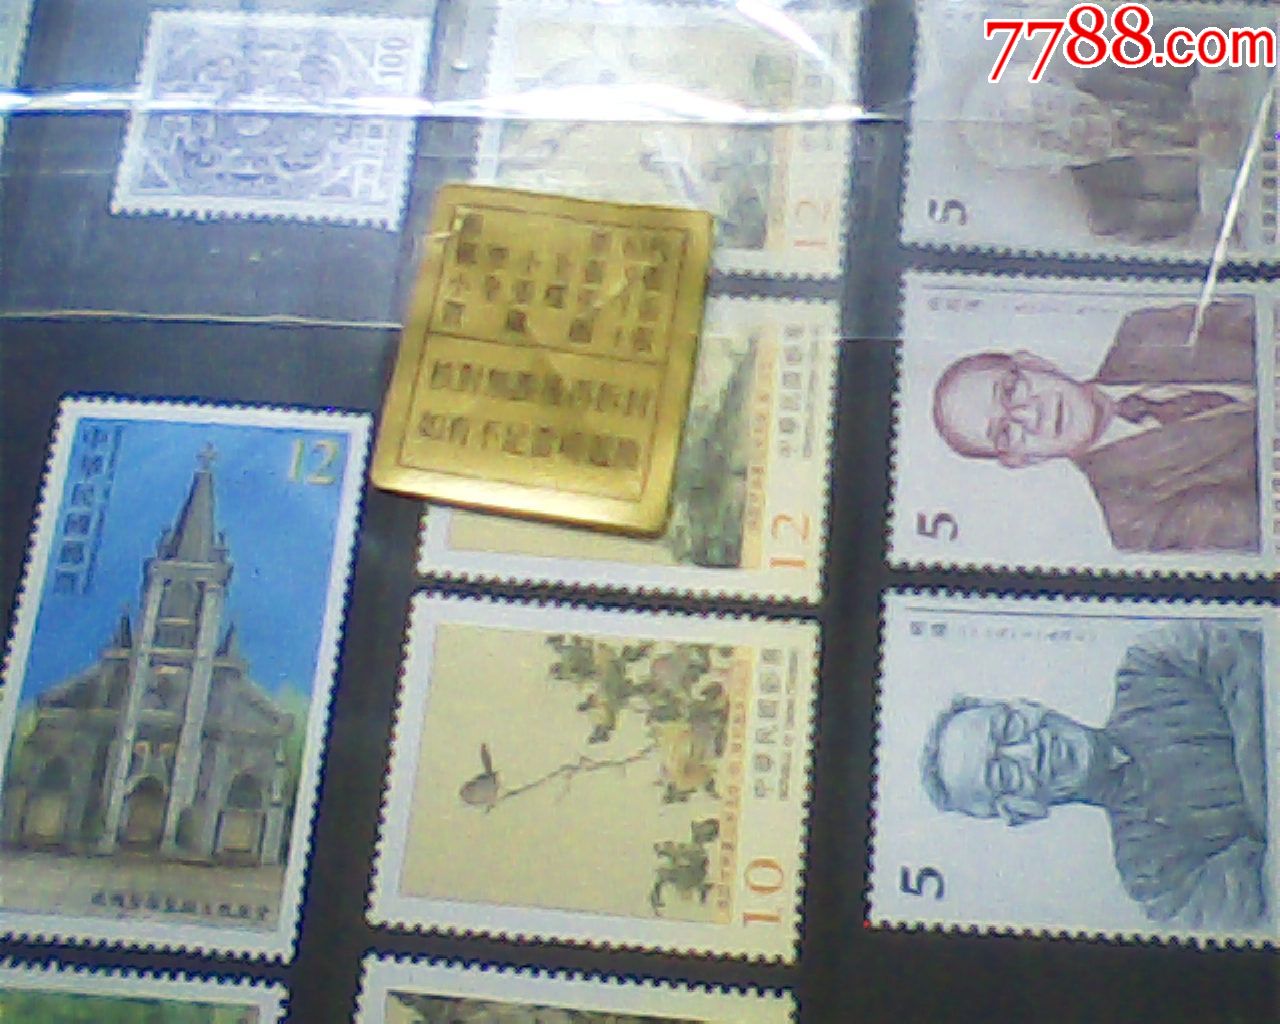 公元2016(民国105)年邮票册,定位册+全年票张